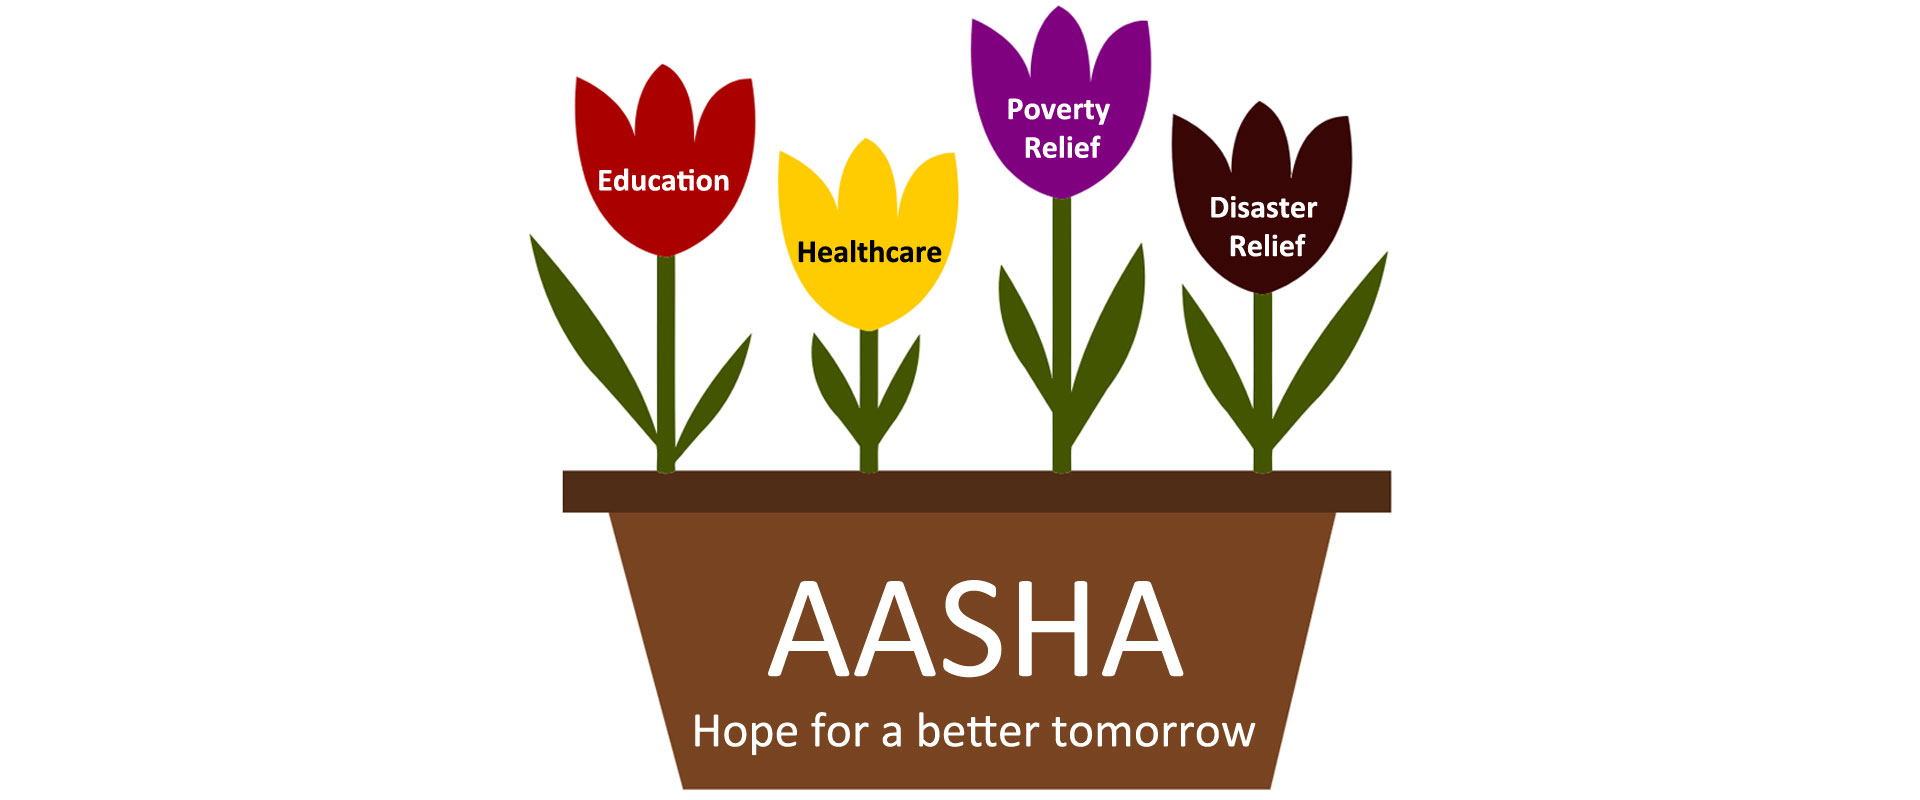 Aasha - Give them hope